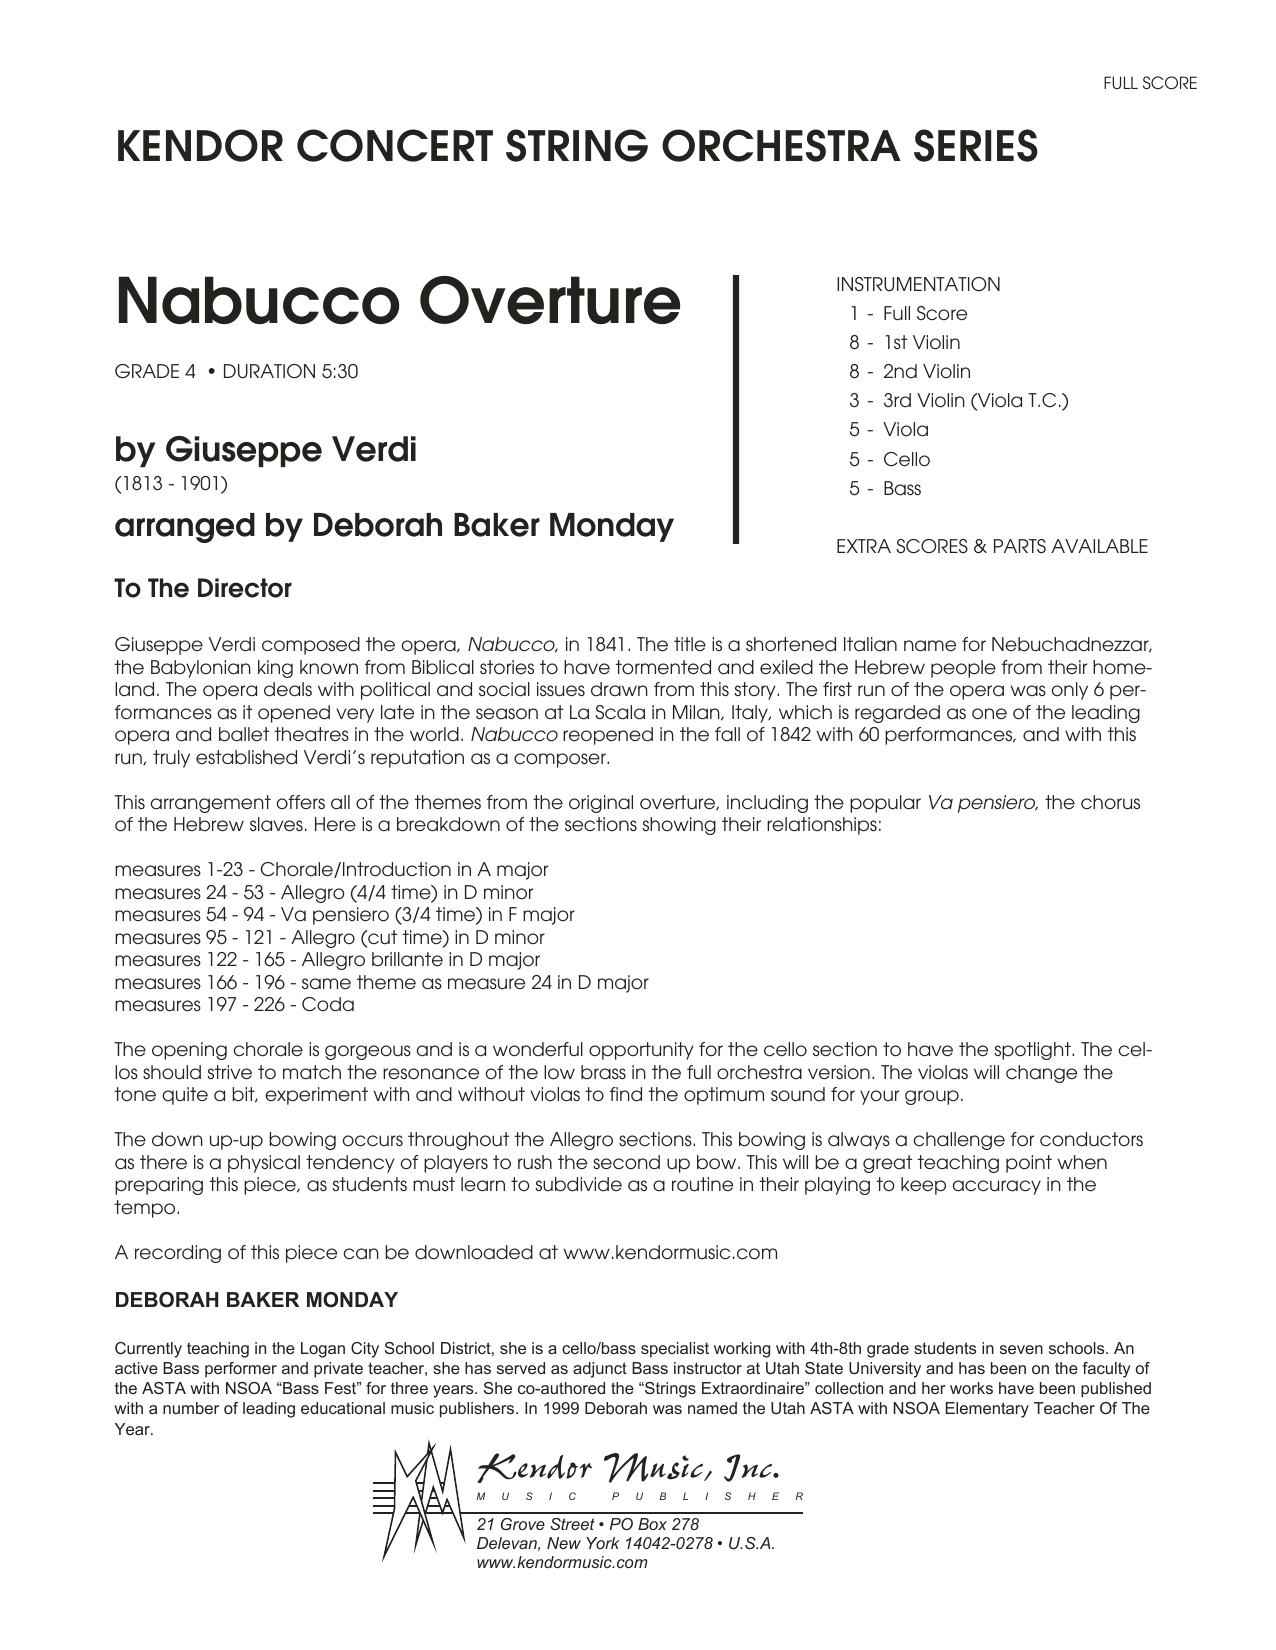 Deborah Baker Monday Nabucco Overture Full Score Sheet Music Notes